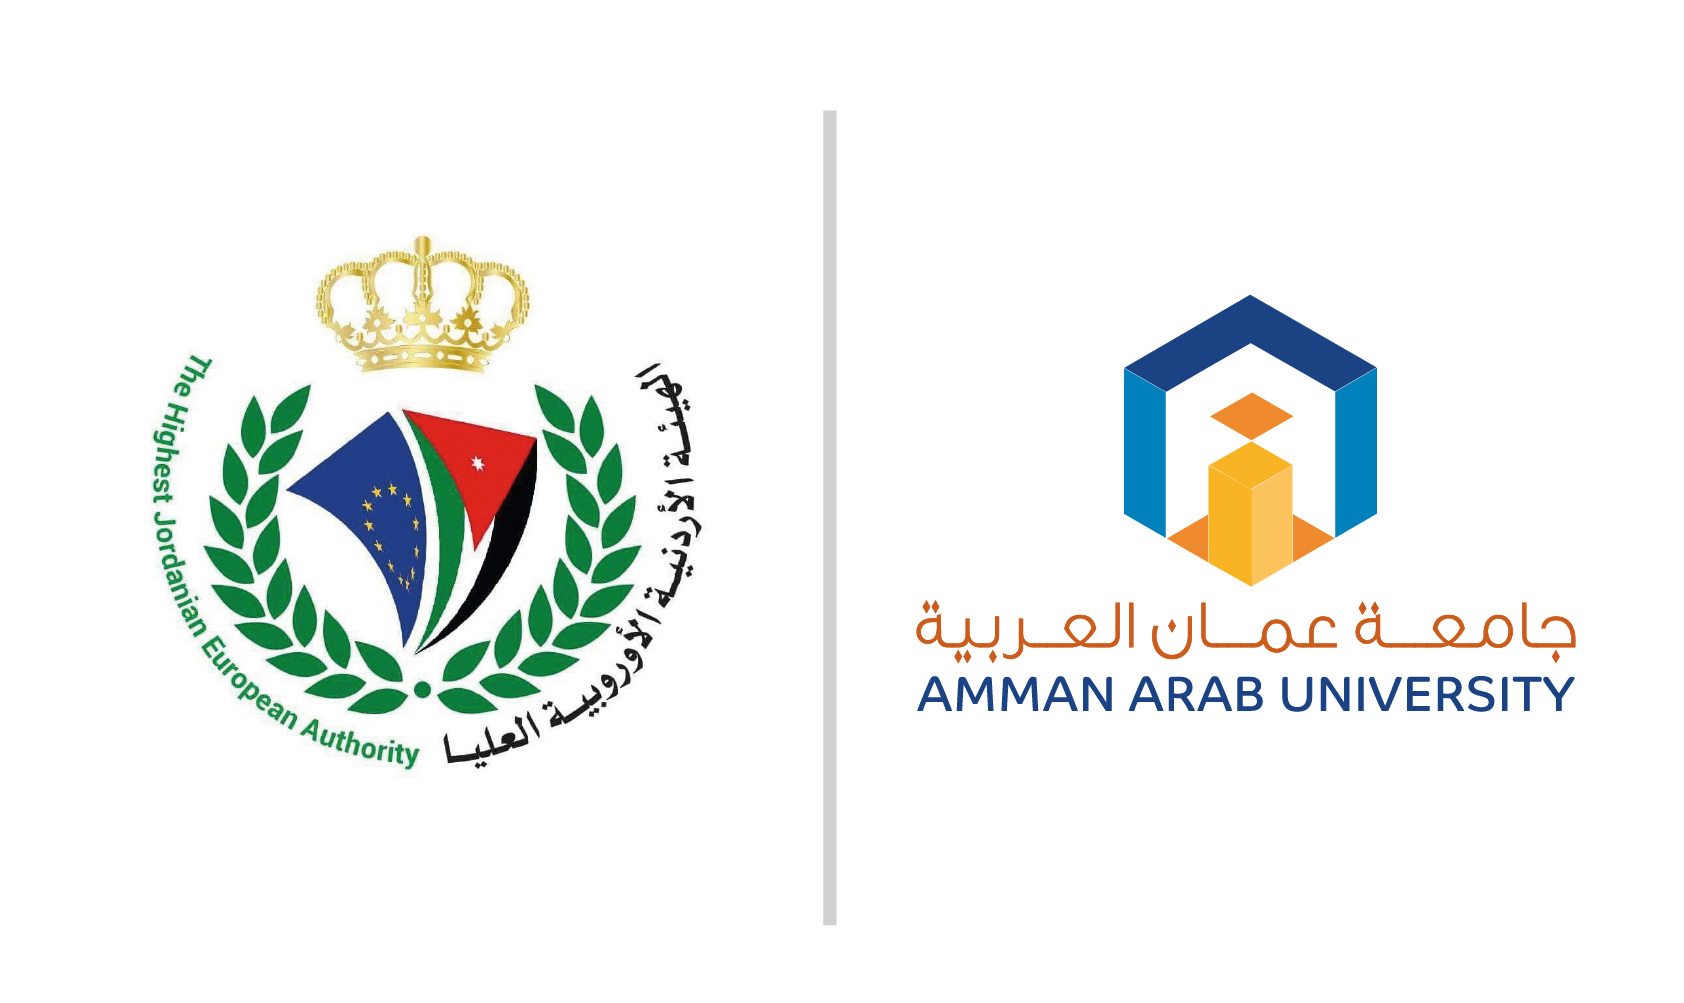 لقاء حواري بين جامعة عمان العربية والهيئة الأردنية الأوروبية العليا عن بعد عبر تطبيق "Zoom"